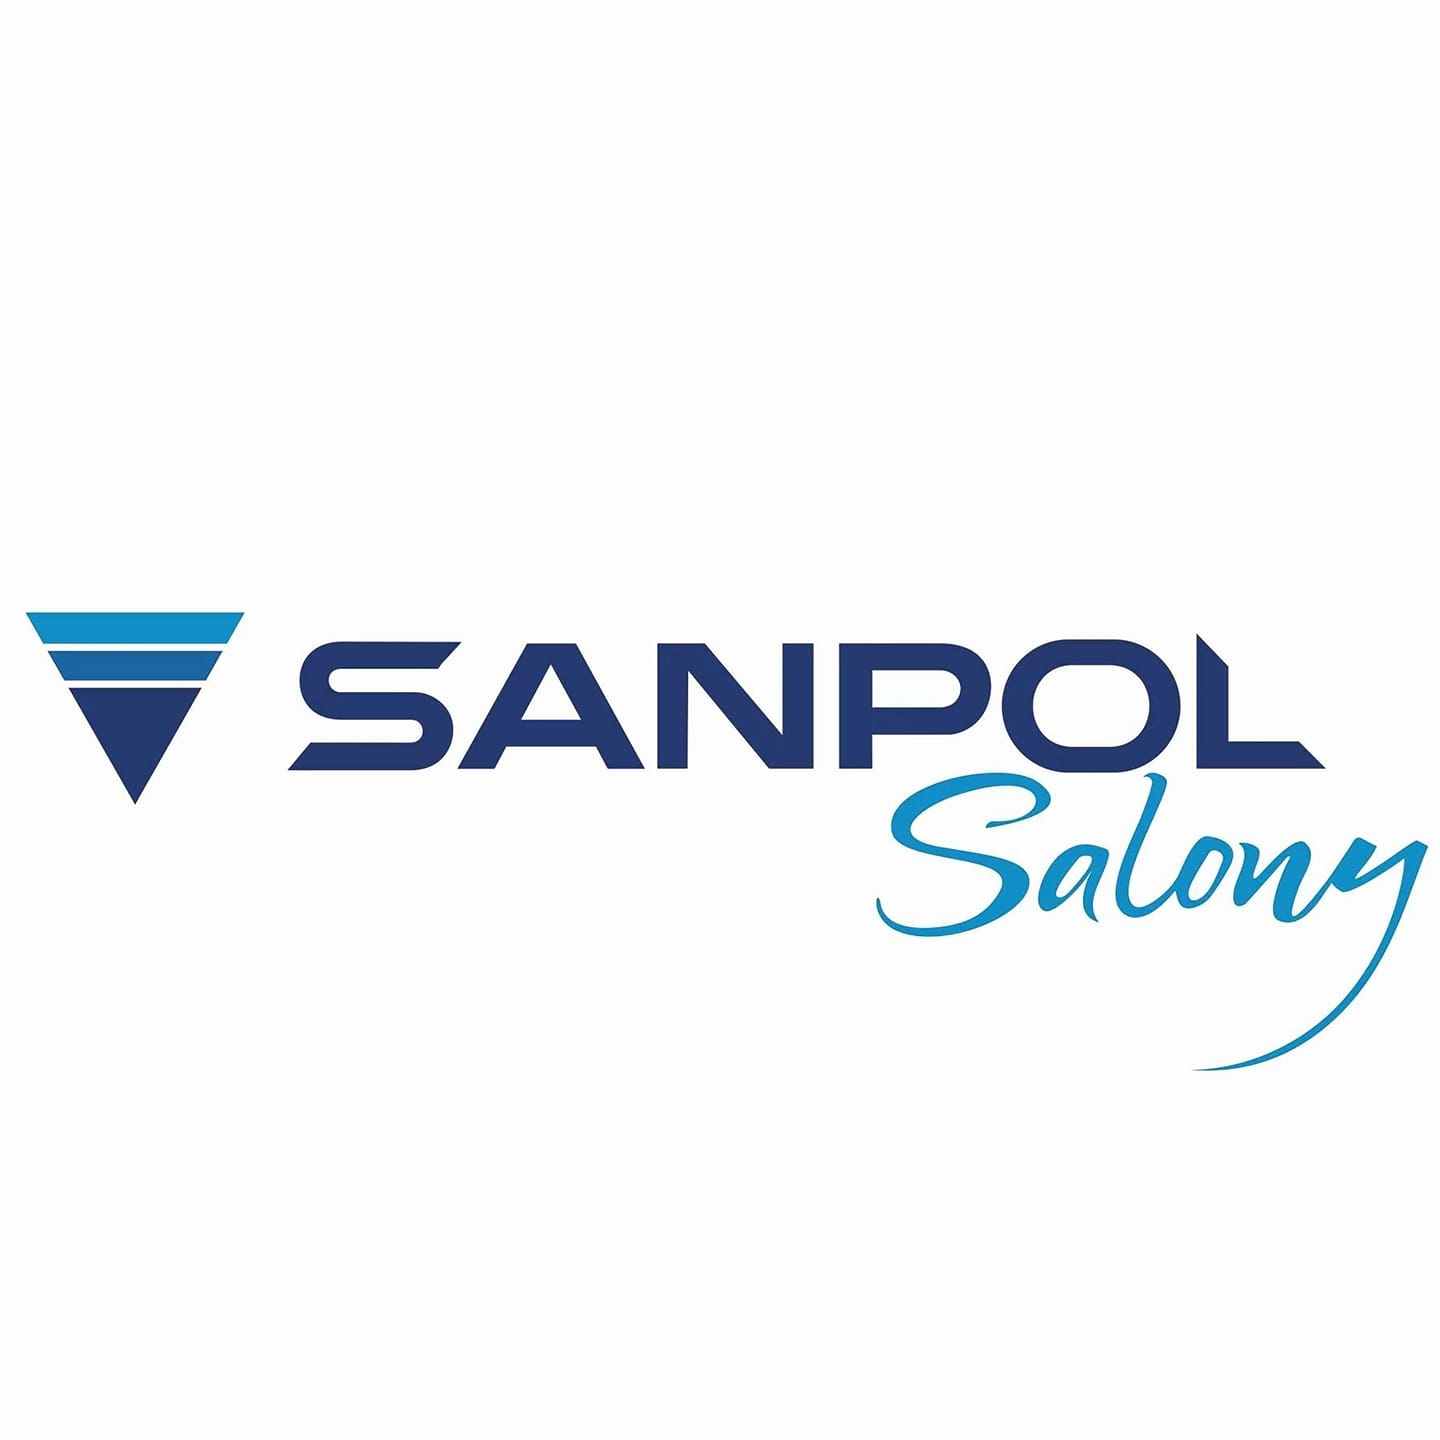 Sanpol